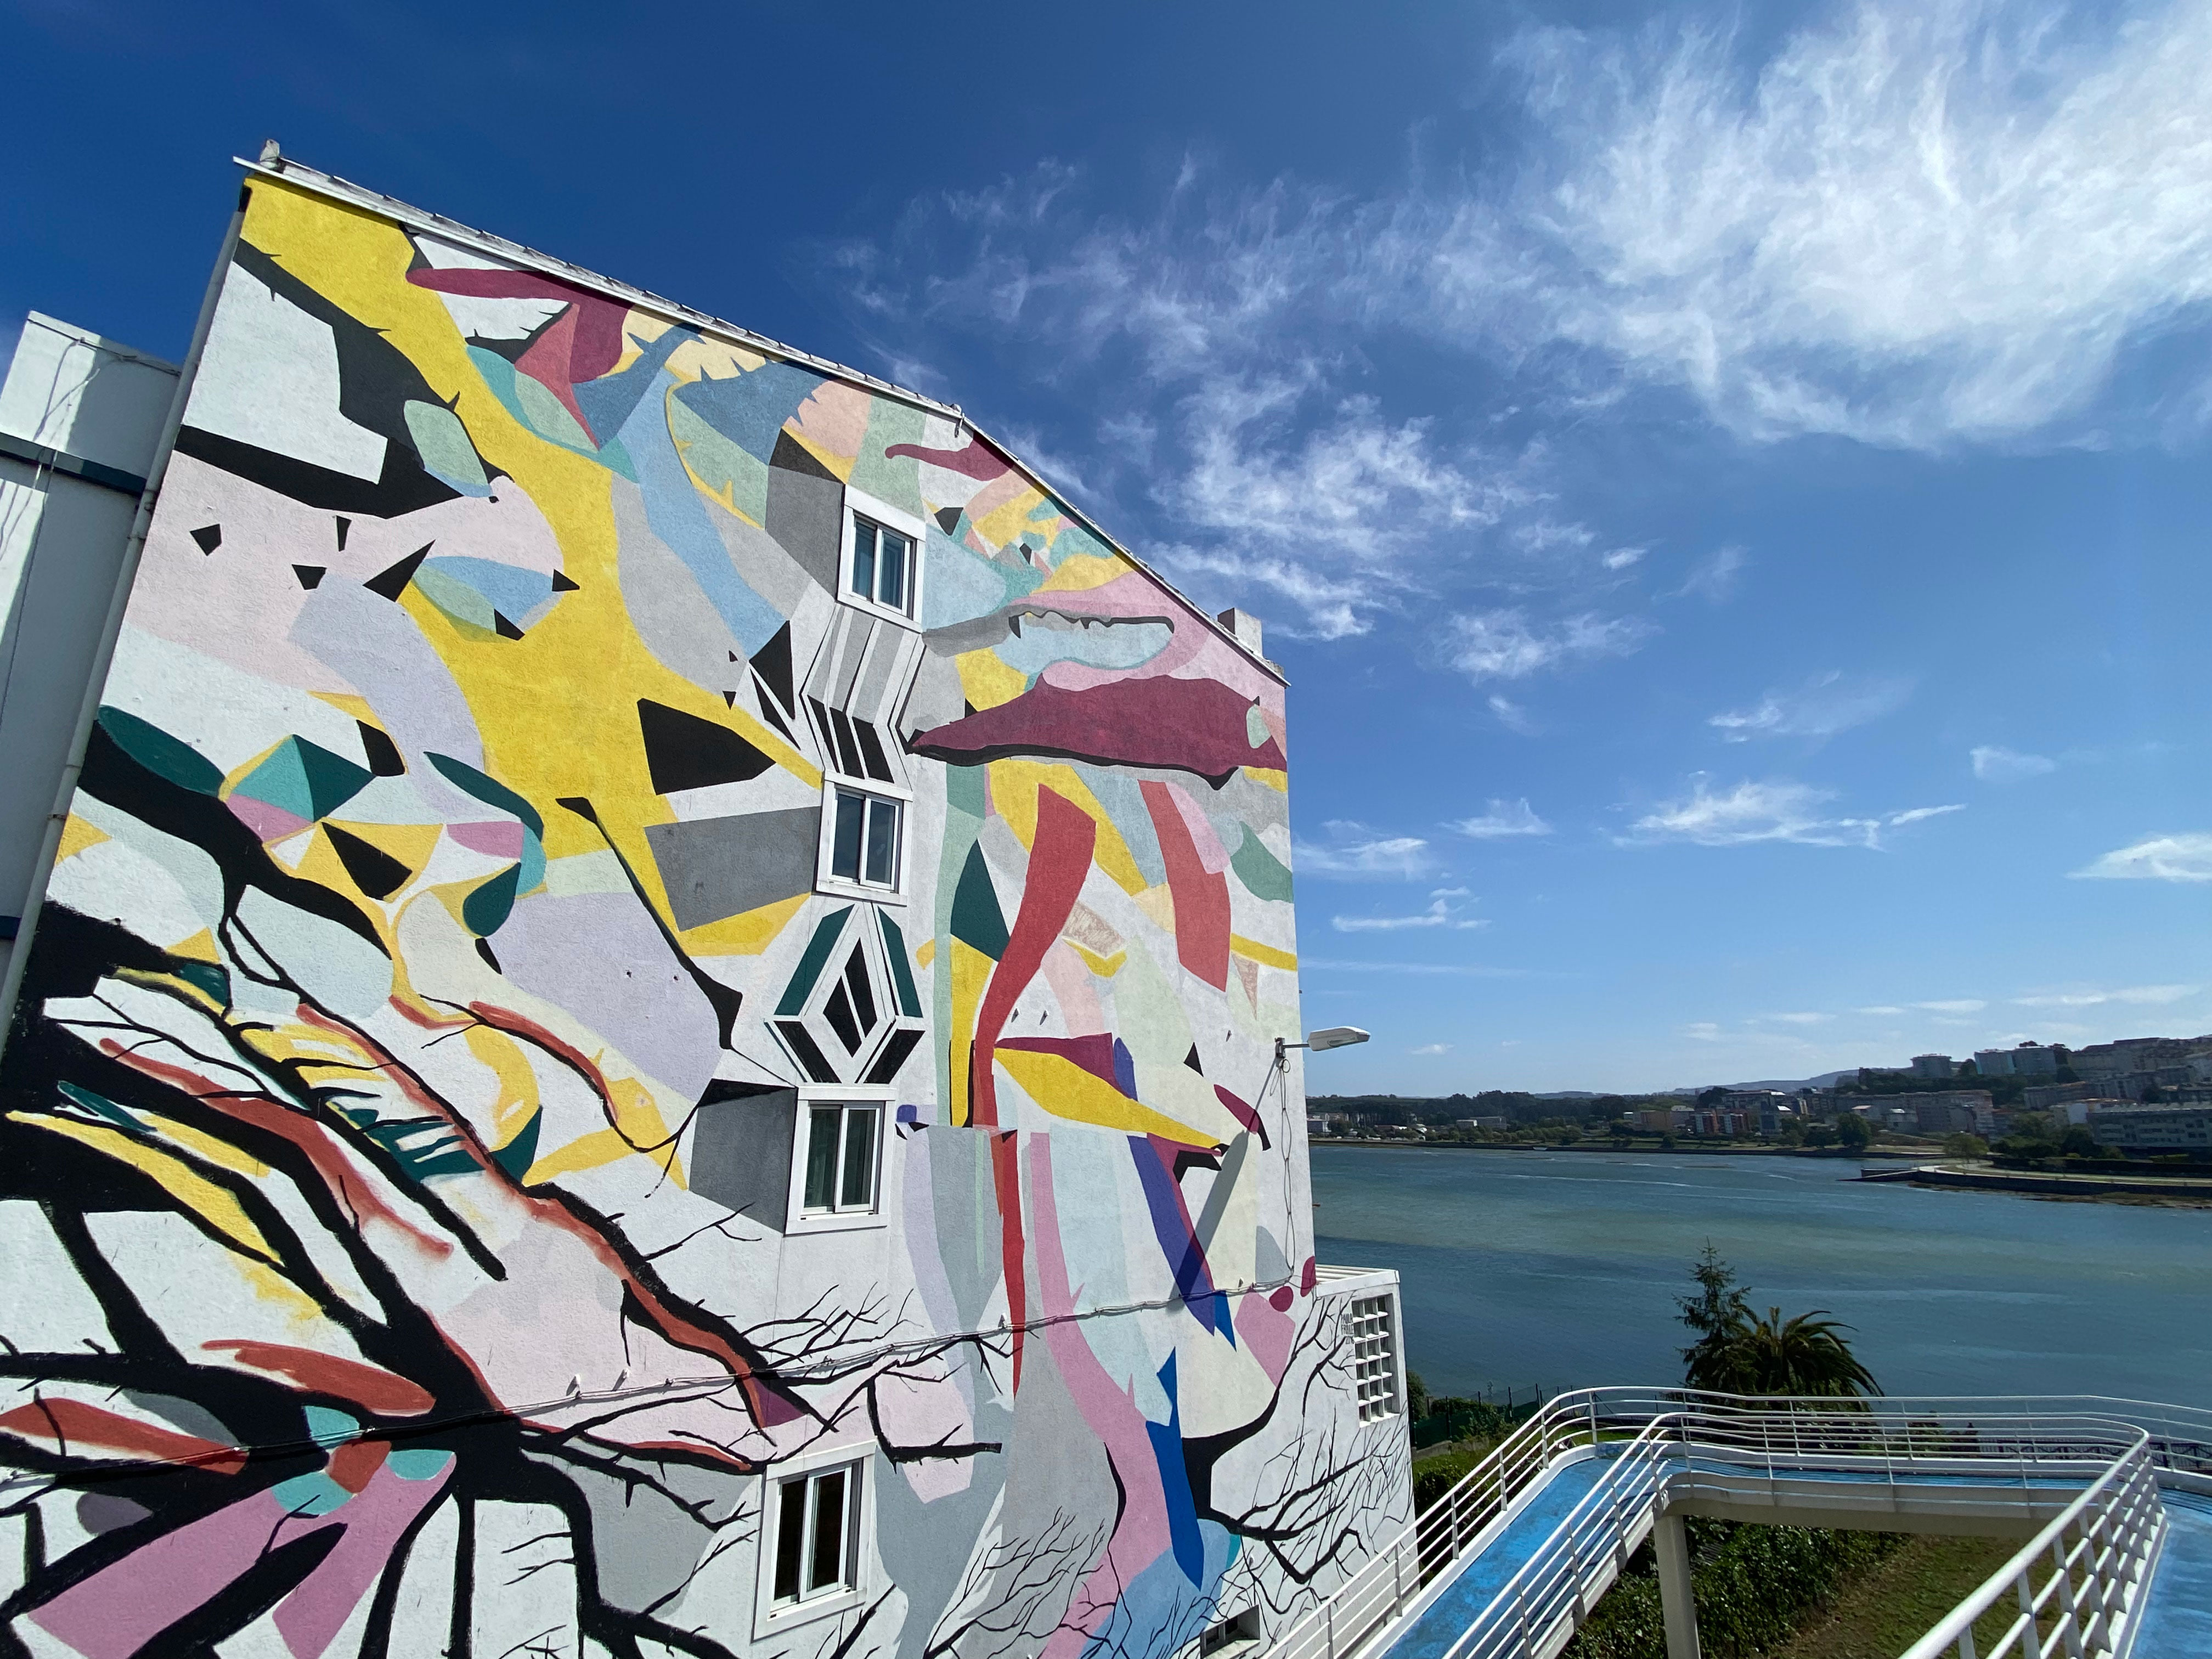 Arte urbano Paula Fraile en Perillo, La Coruña